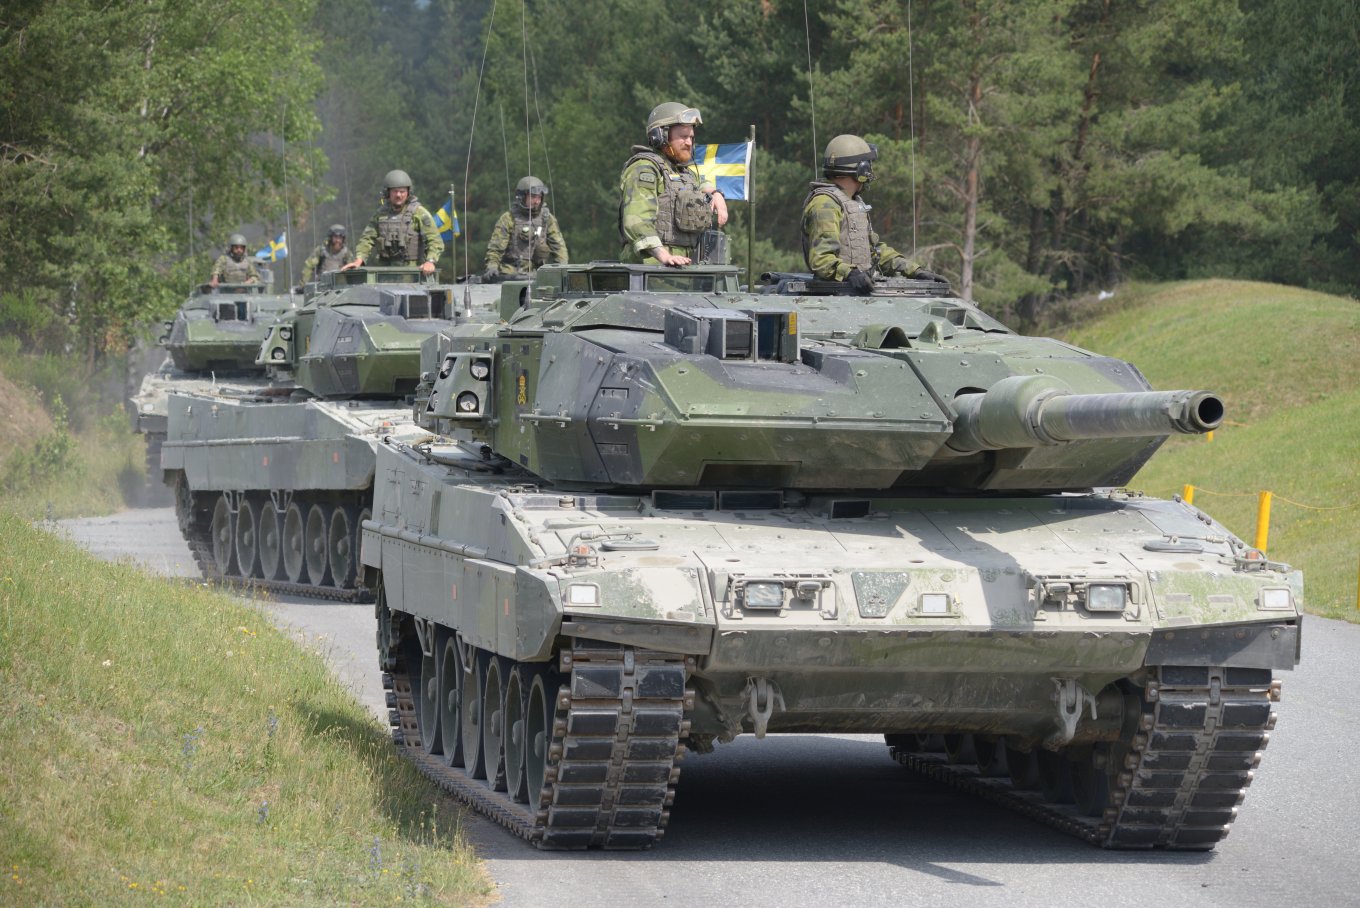 Strv 122, Sweden